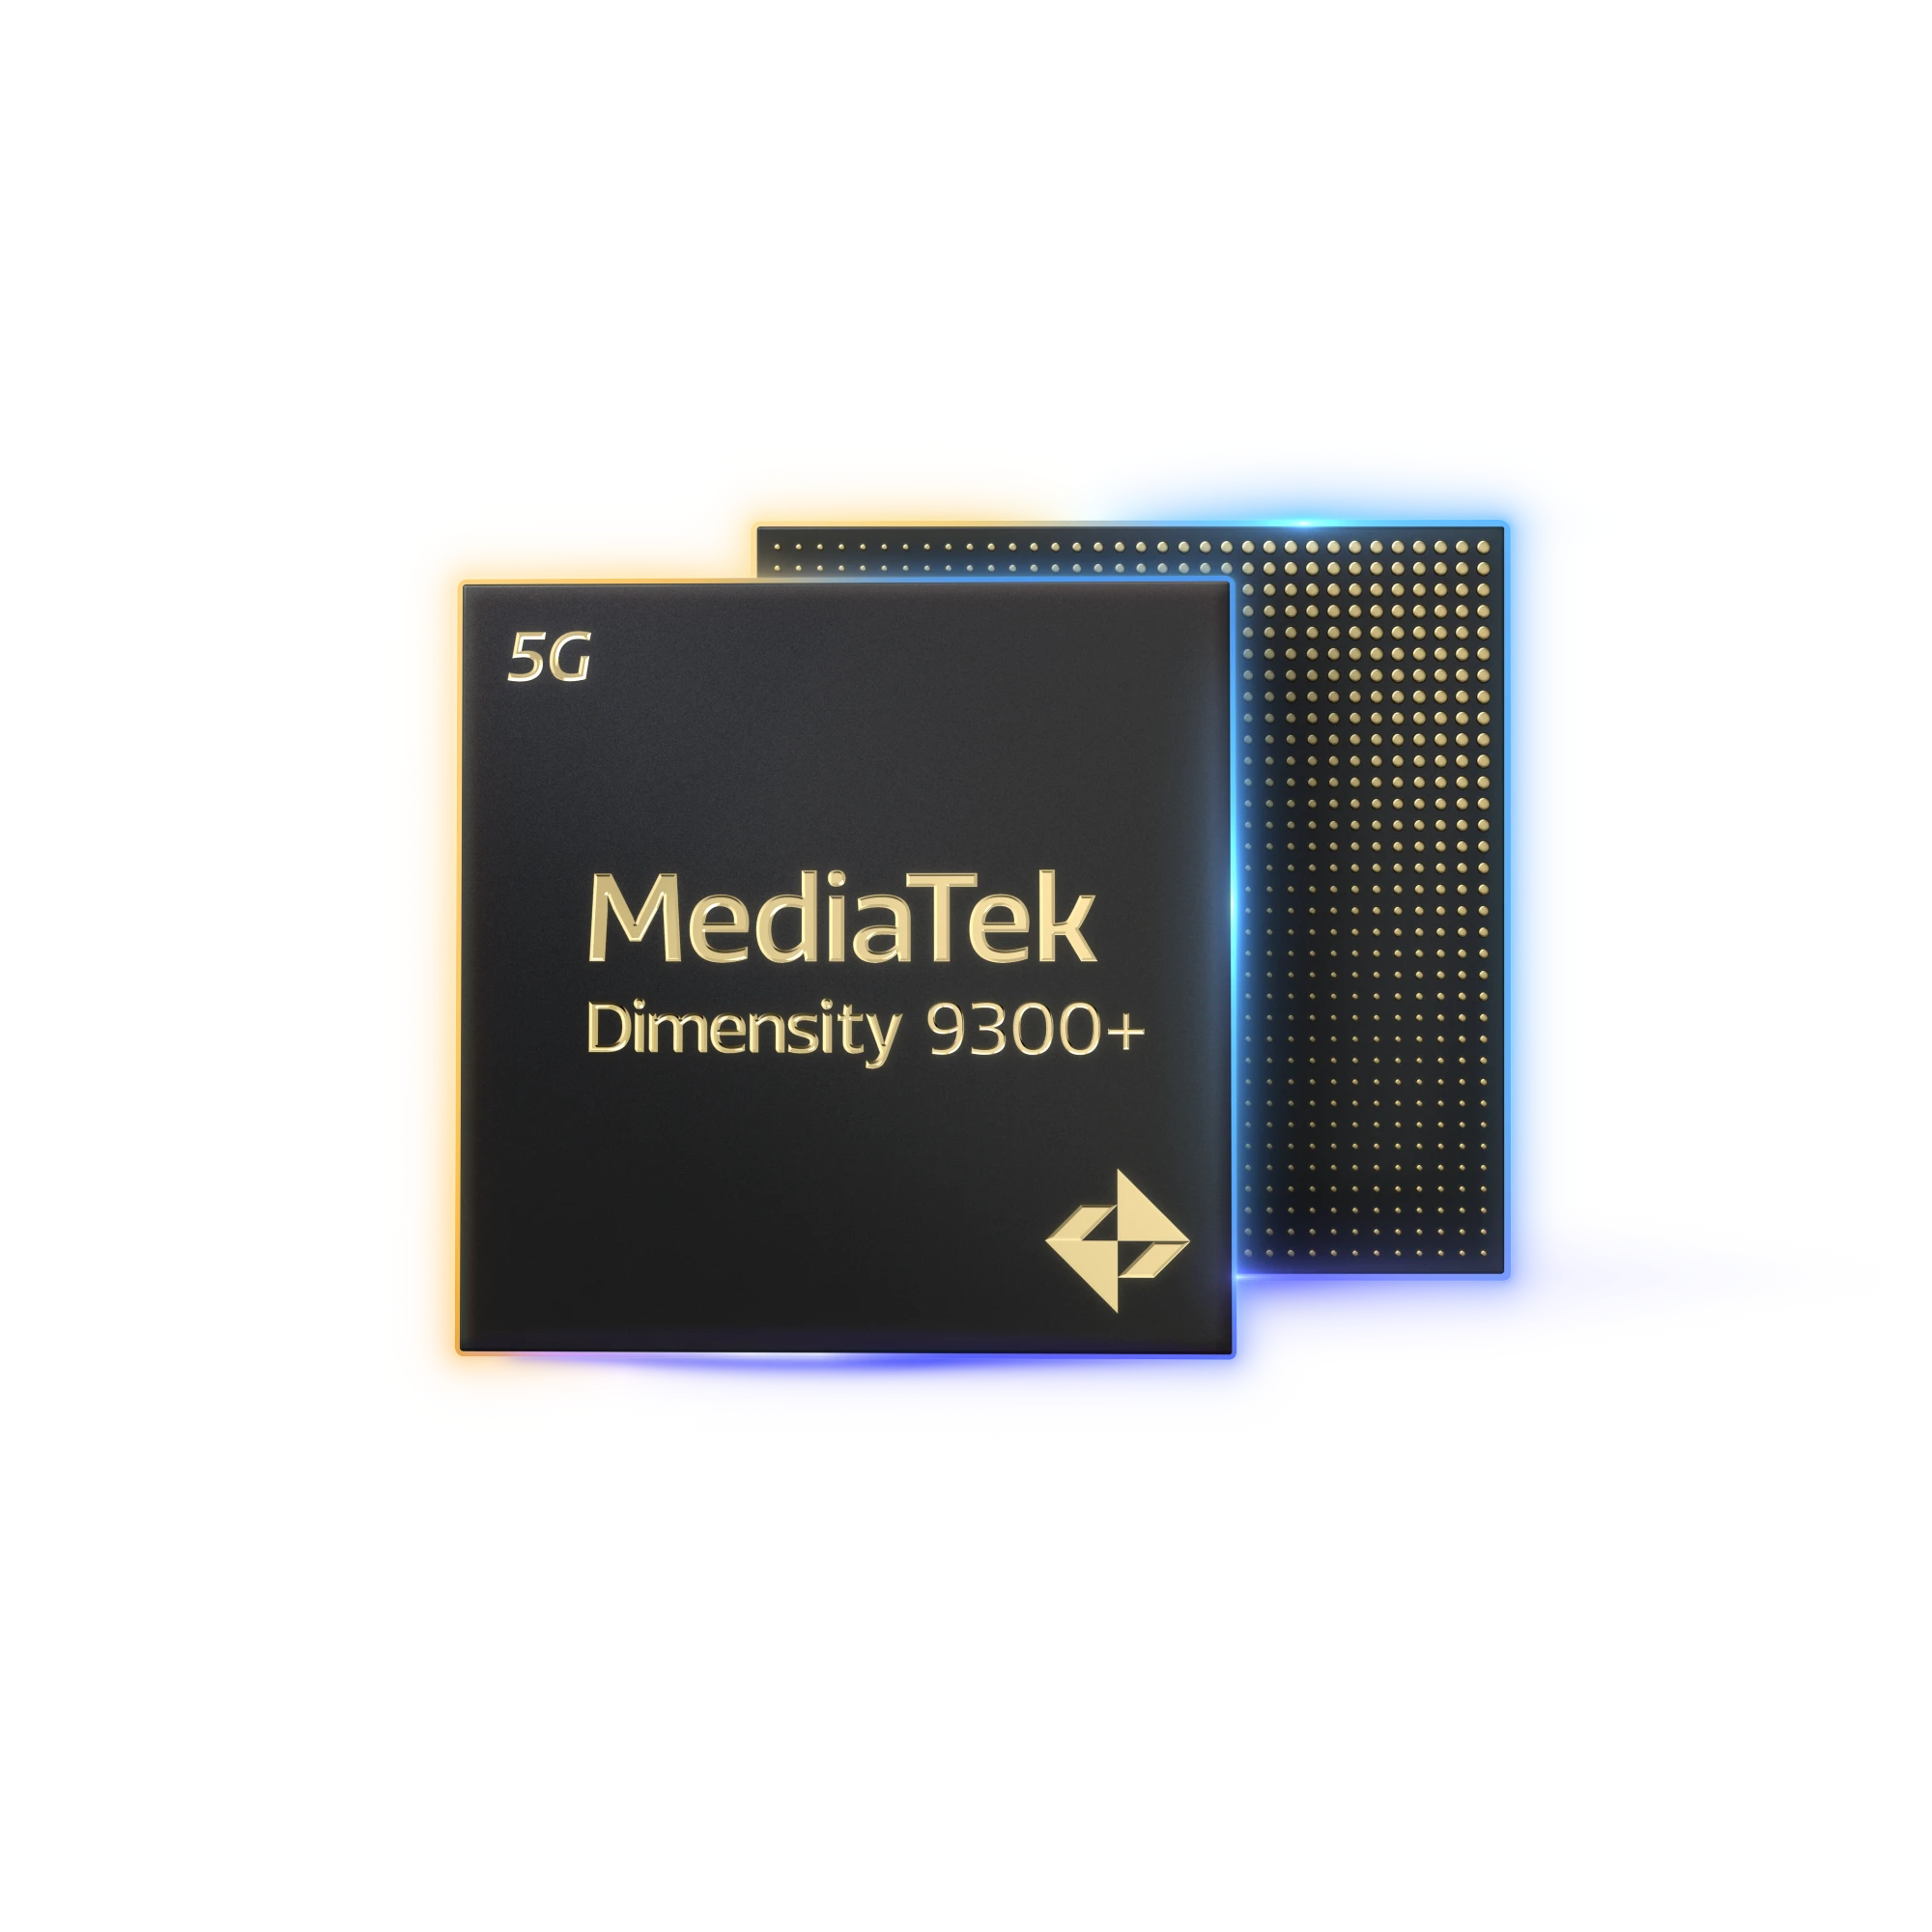 mediatek dimensity 9300 new